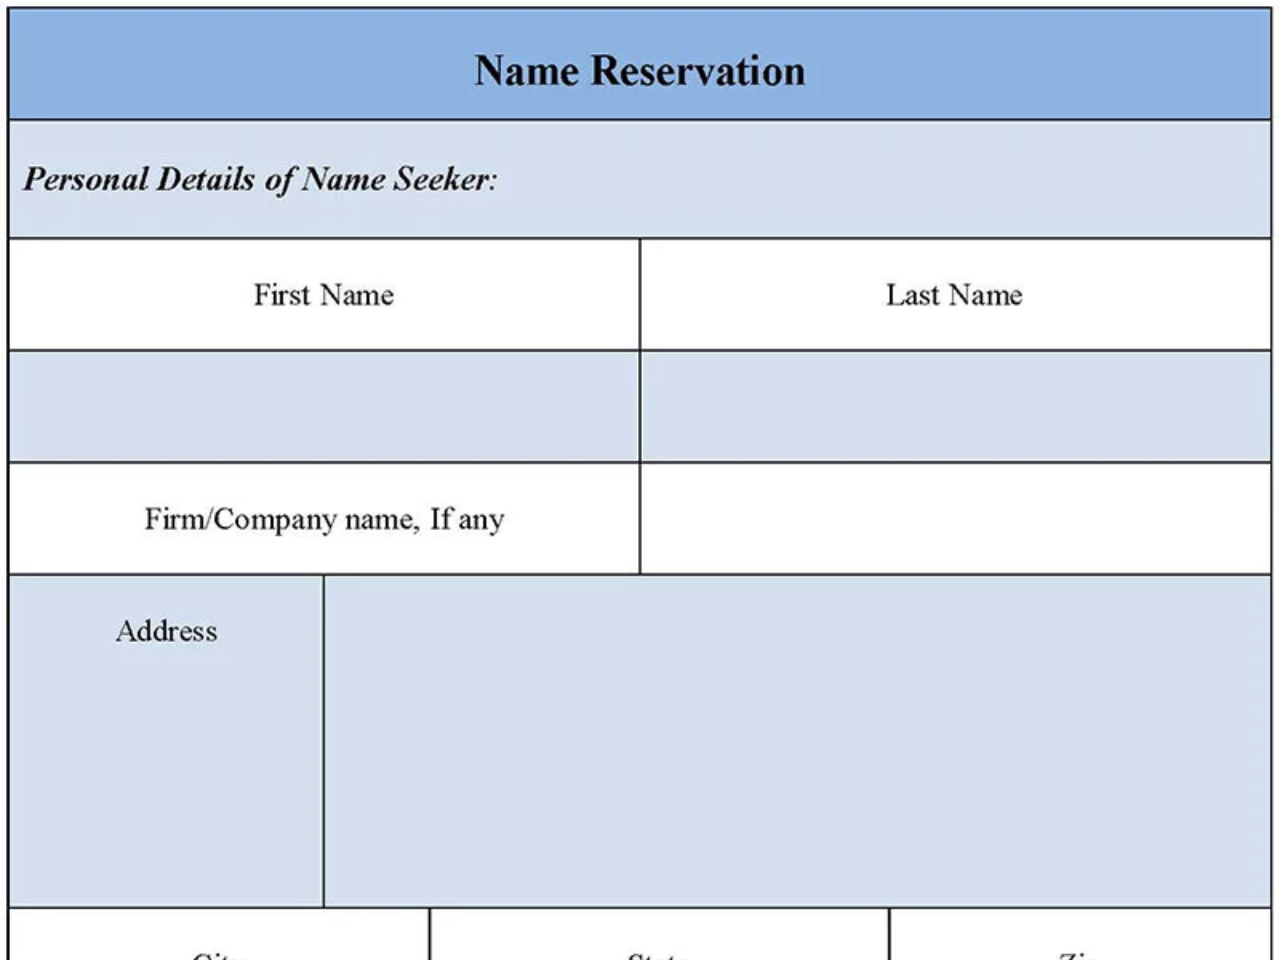 Name Reservation Form